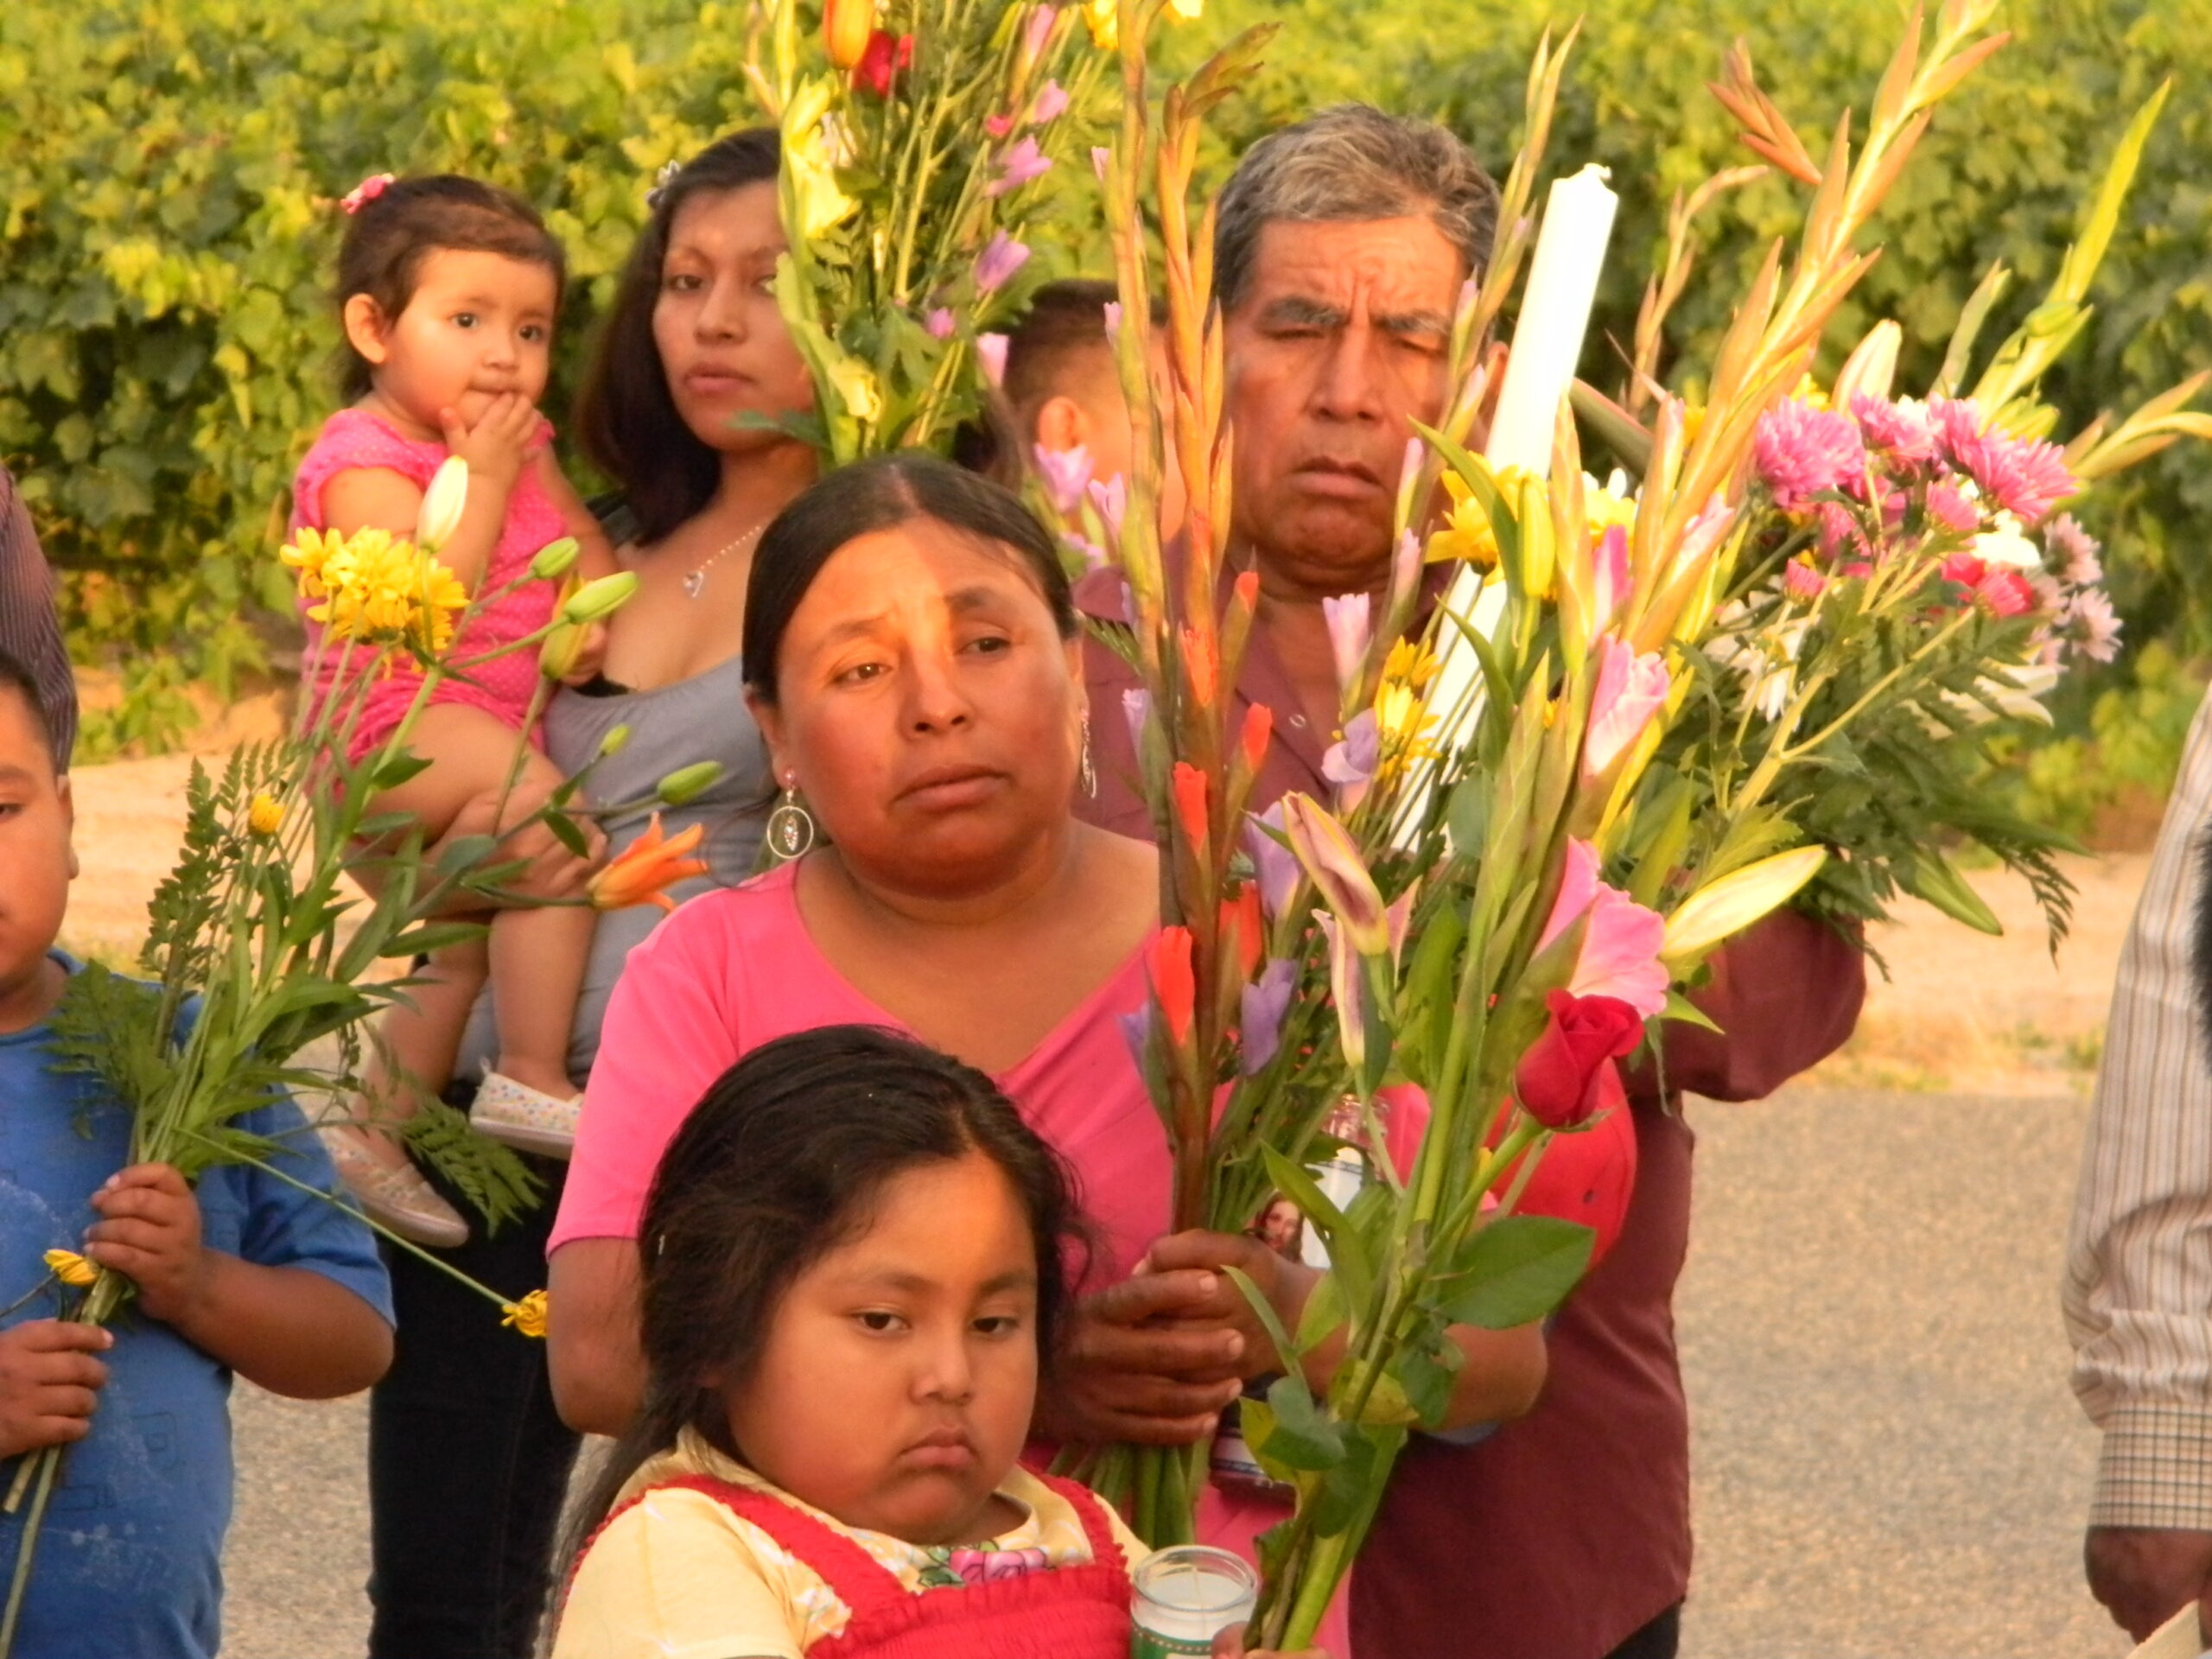 Mission of Padre Migrante: "Walk with My People in Crisis" - "Camina con mi pueblo en crisis"